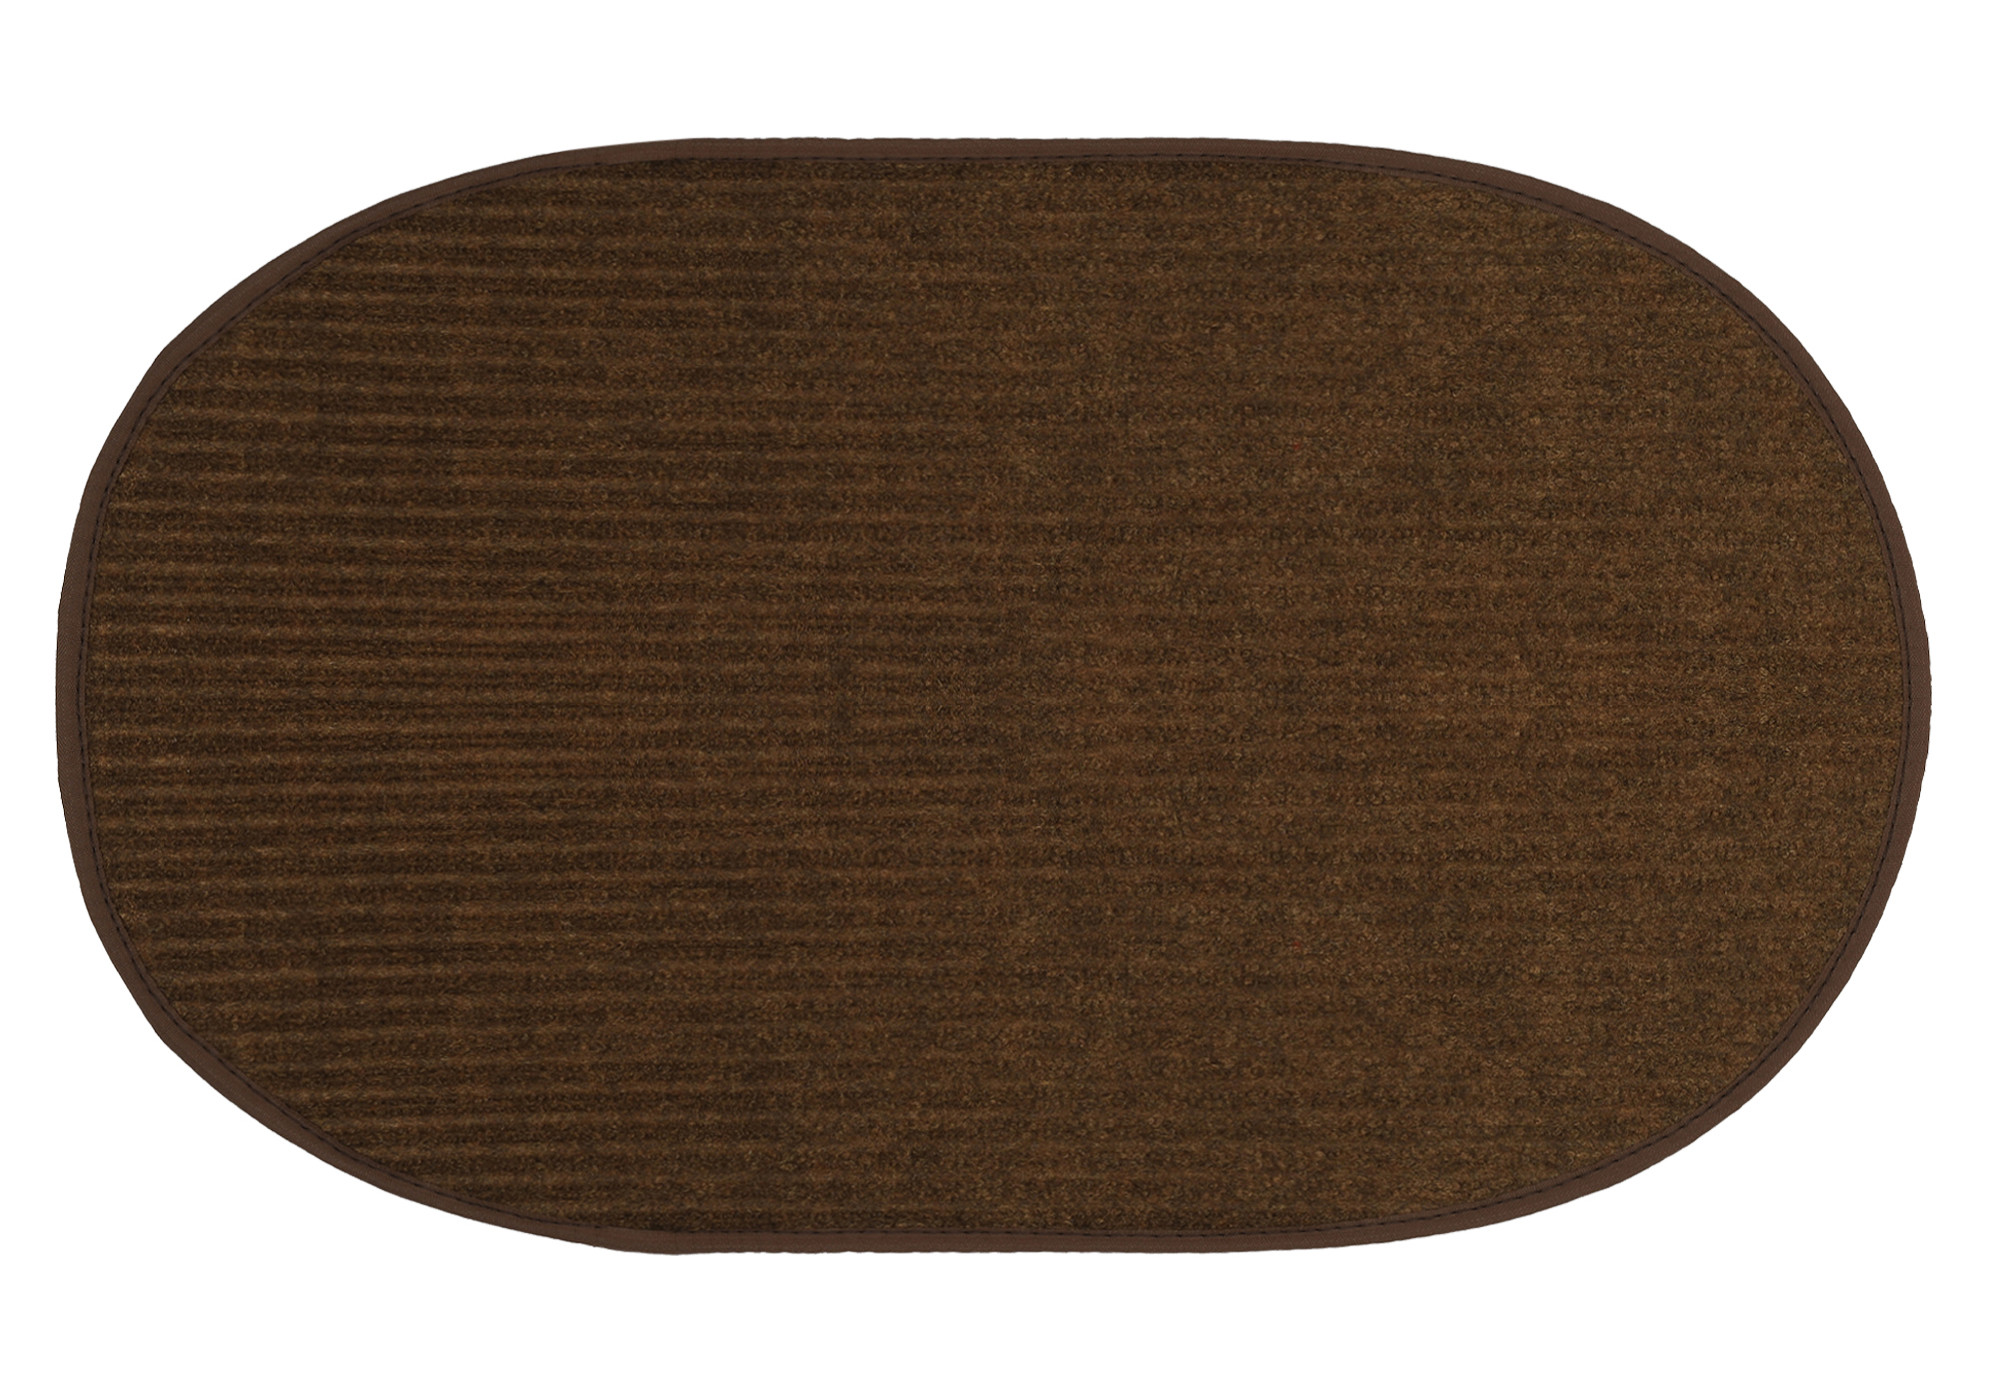 Kuber Industries Oval Shape Durable Microfiber Door Mat, Heavy Duty Doormat, Indoor Outdoor, Easy Clean, Waterproof, Low-Profile Mats for Entry, Patio, Garage (Set Of 2,14'' x 23'',Red & Brown)-KUBMRT12105